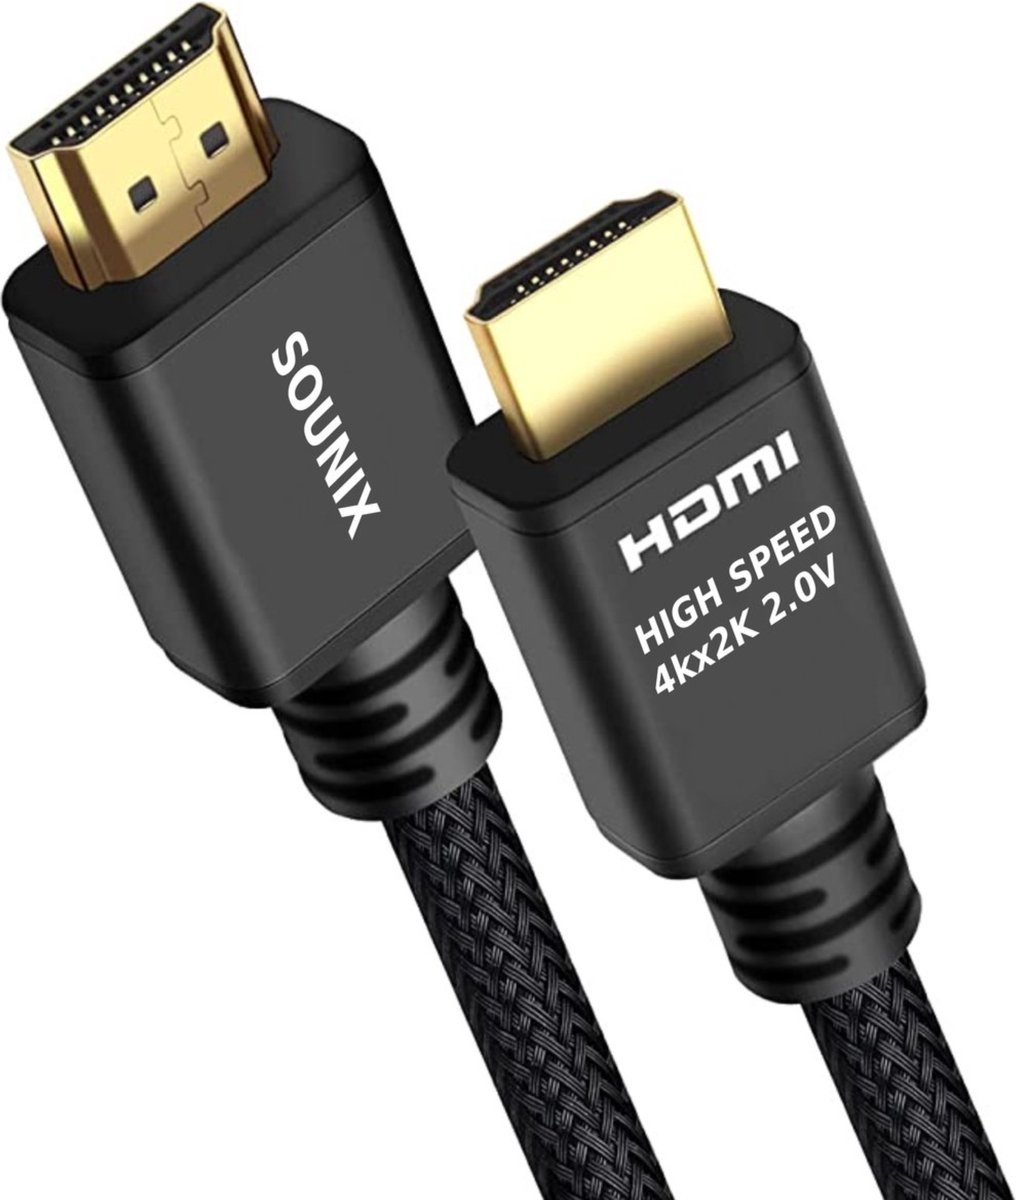 Câble HDMI 2.0 4K 60Hz Mâle/Mâle Plaqué or Longueur 0,5m